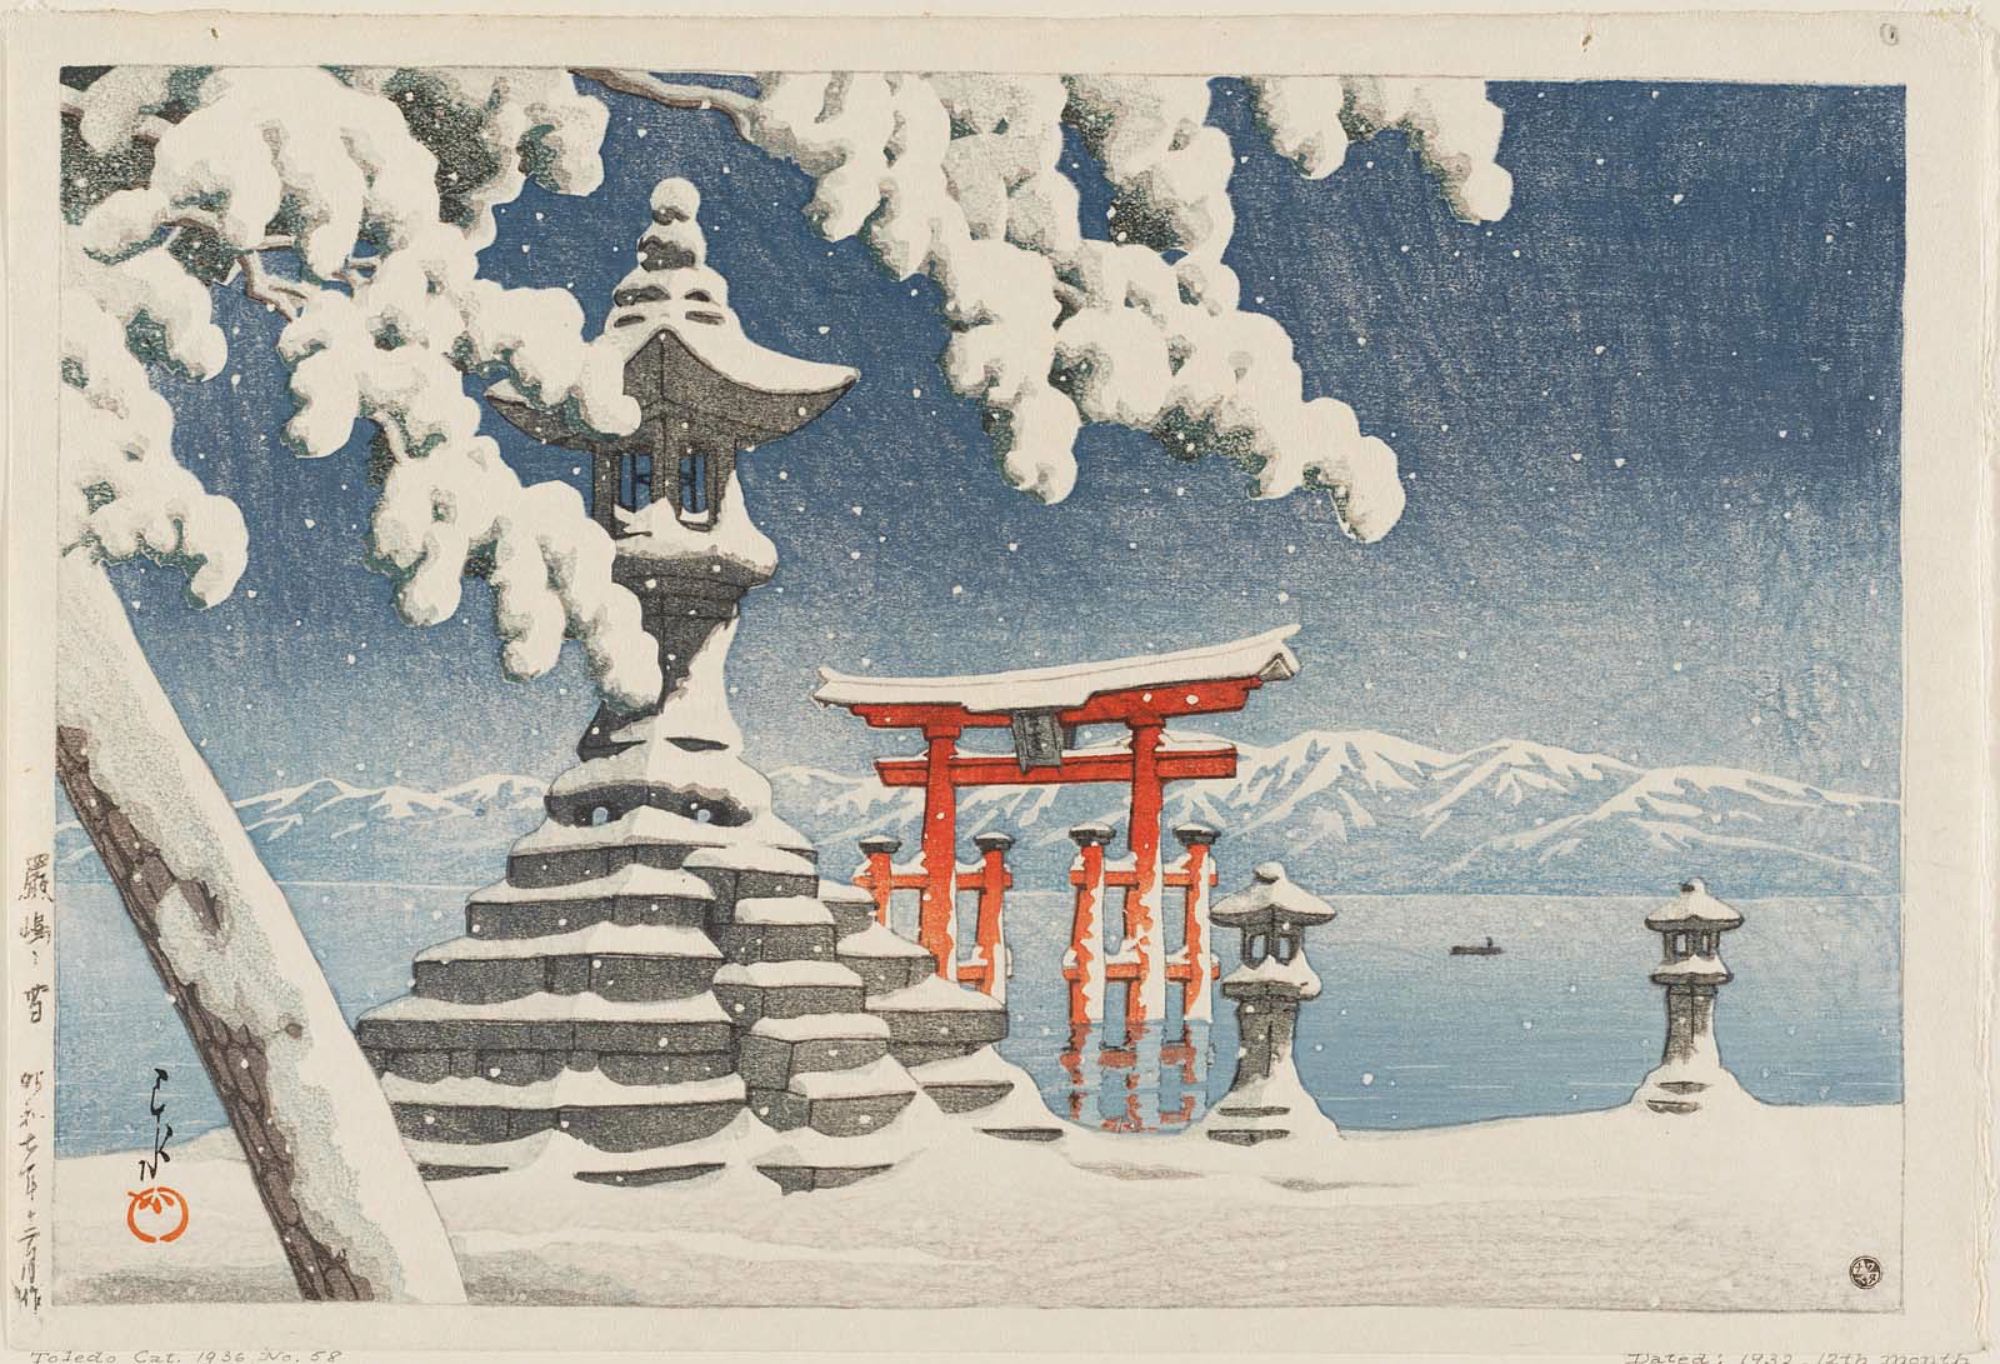 嚴島之雪 by Hasui Kawase - 1932 年 - 38 x 25 釐米 